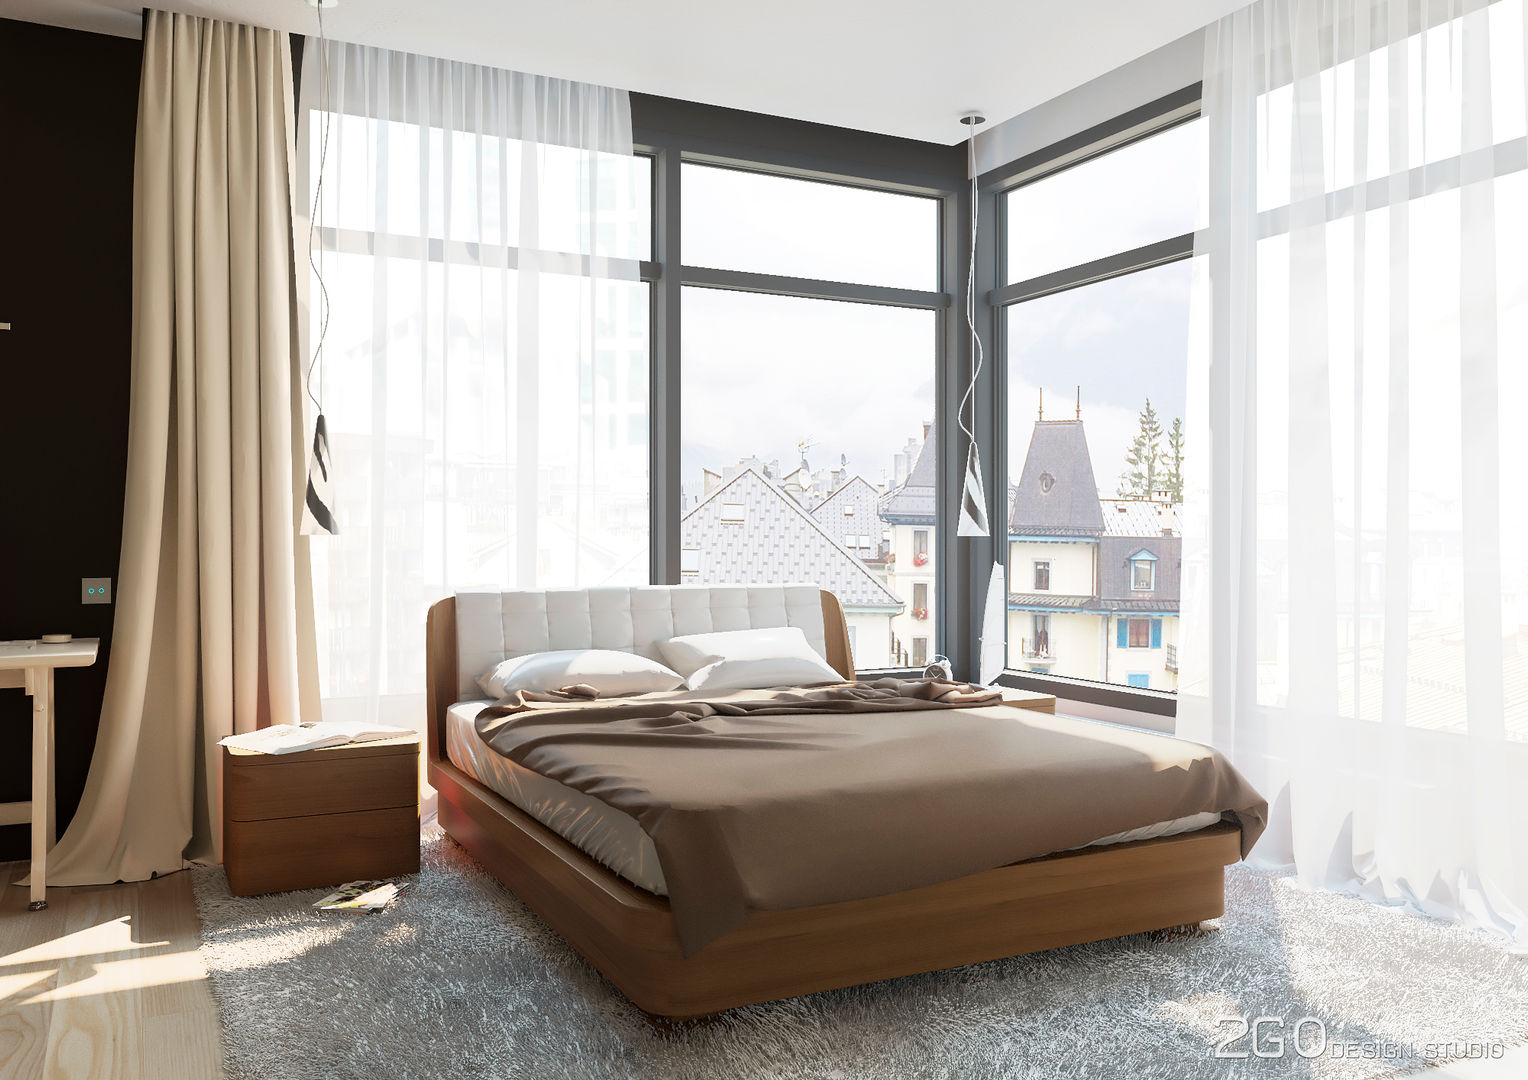 Квартира - студия "Praga" 2GO Design Studio Спальня в стиле модерн Дерево Эффект древесины